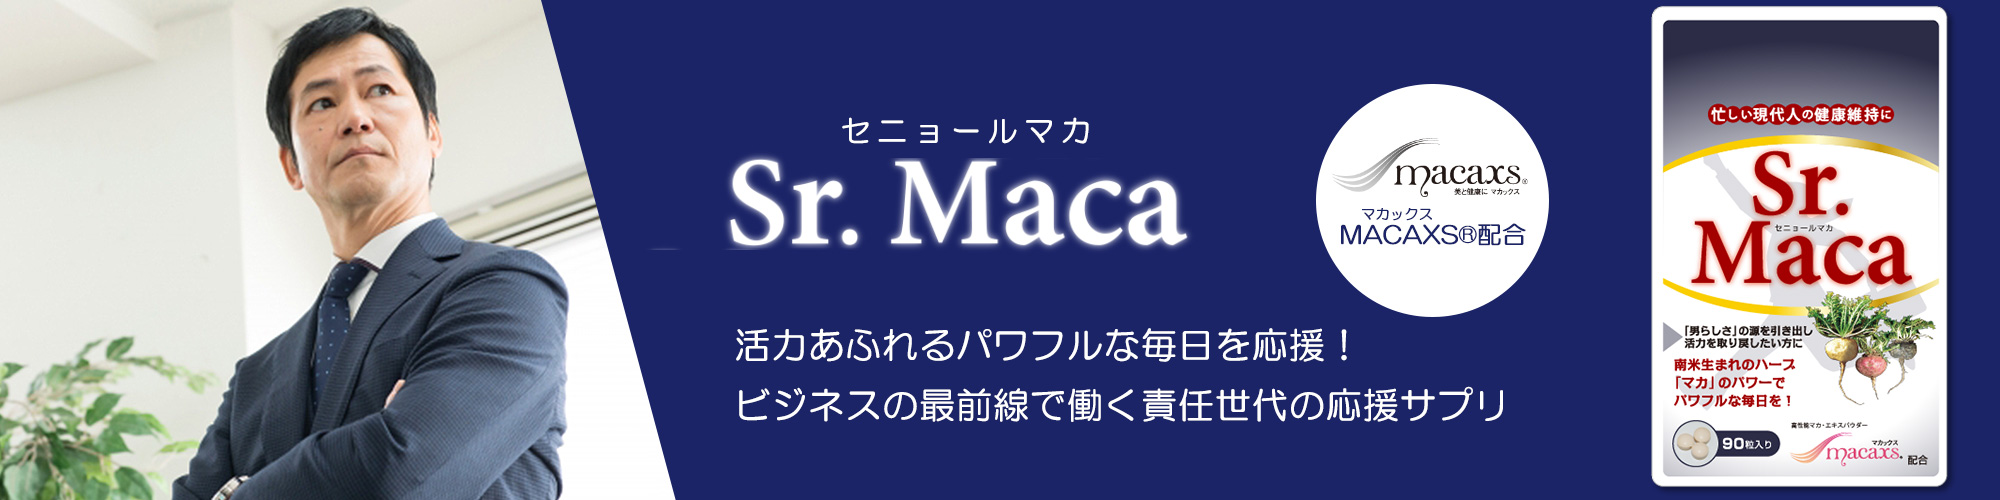 「Sr.Maca(セニョールマカ)」は活力あふれるパワフルな毎日を応援するサプリメント。いつまでも元気で若々しくありたい方におすすめです。